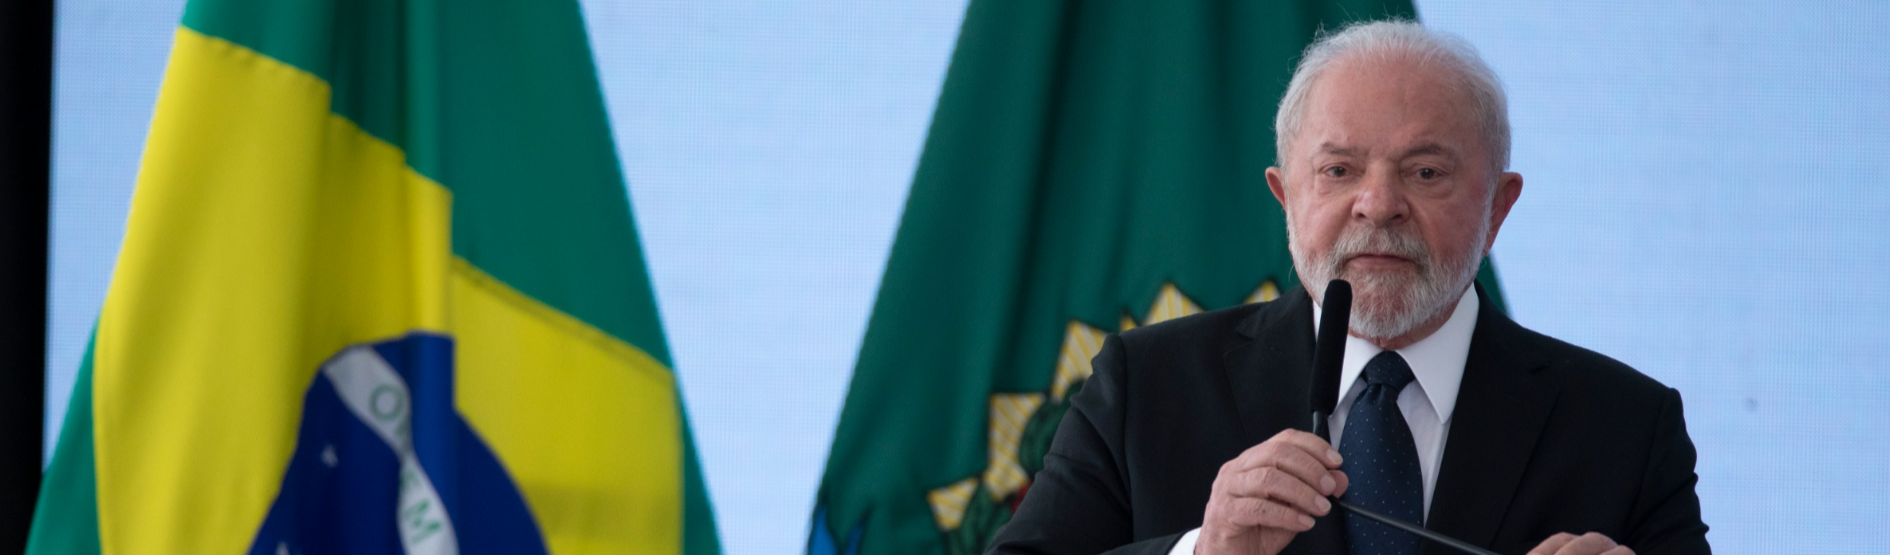 Pronasci: Segurança Pública sob Lula vai encarar feminicídio, racismo e violência policial